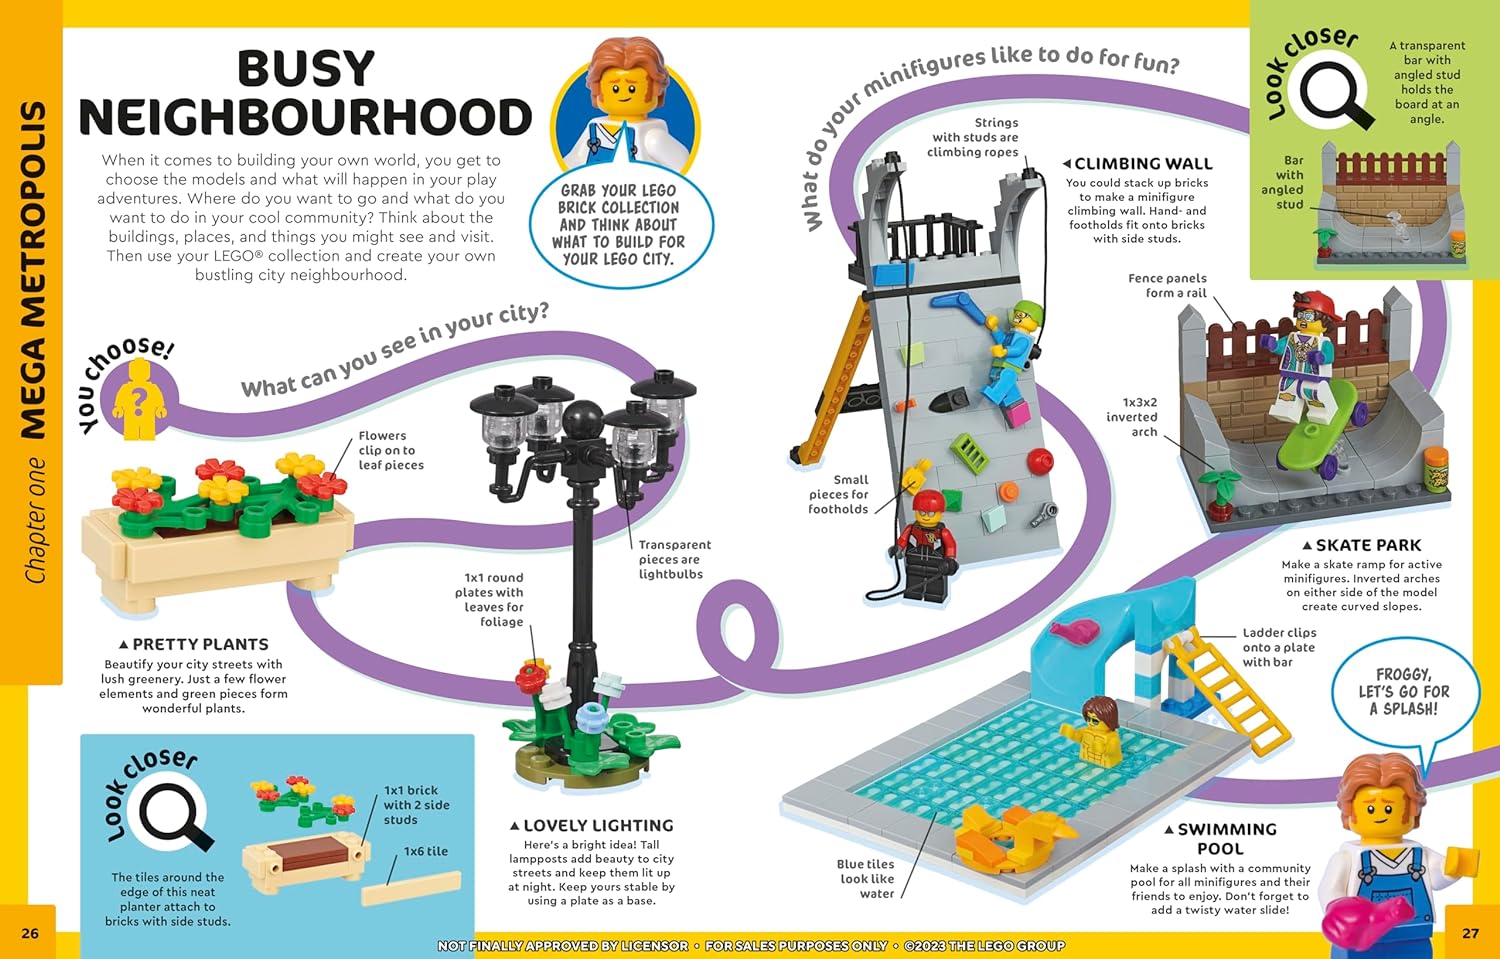 ▻ Nouveaux Livres LEGO à paraître en 2021 : Build and Stick Custom Cars et  5 Minutes Builds - HOTH BRICKS